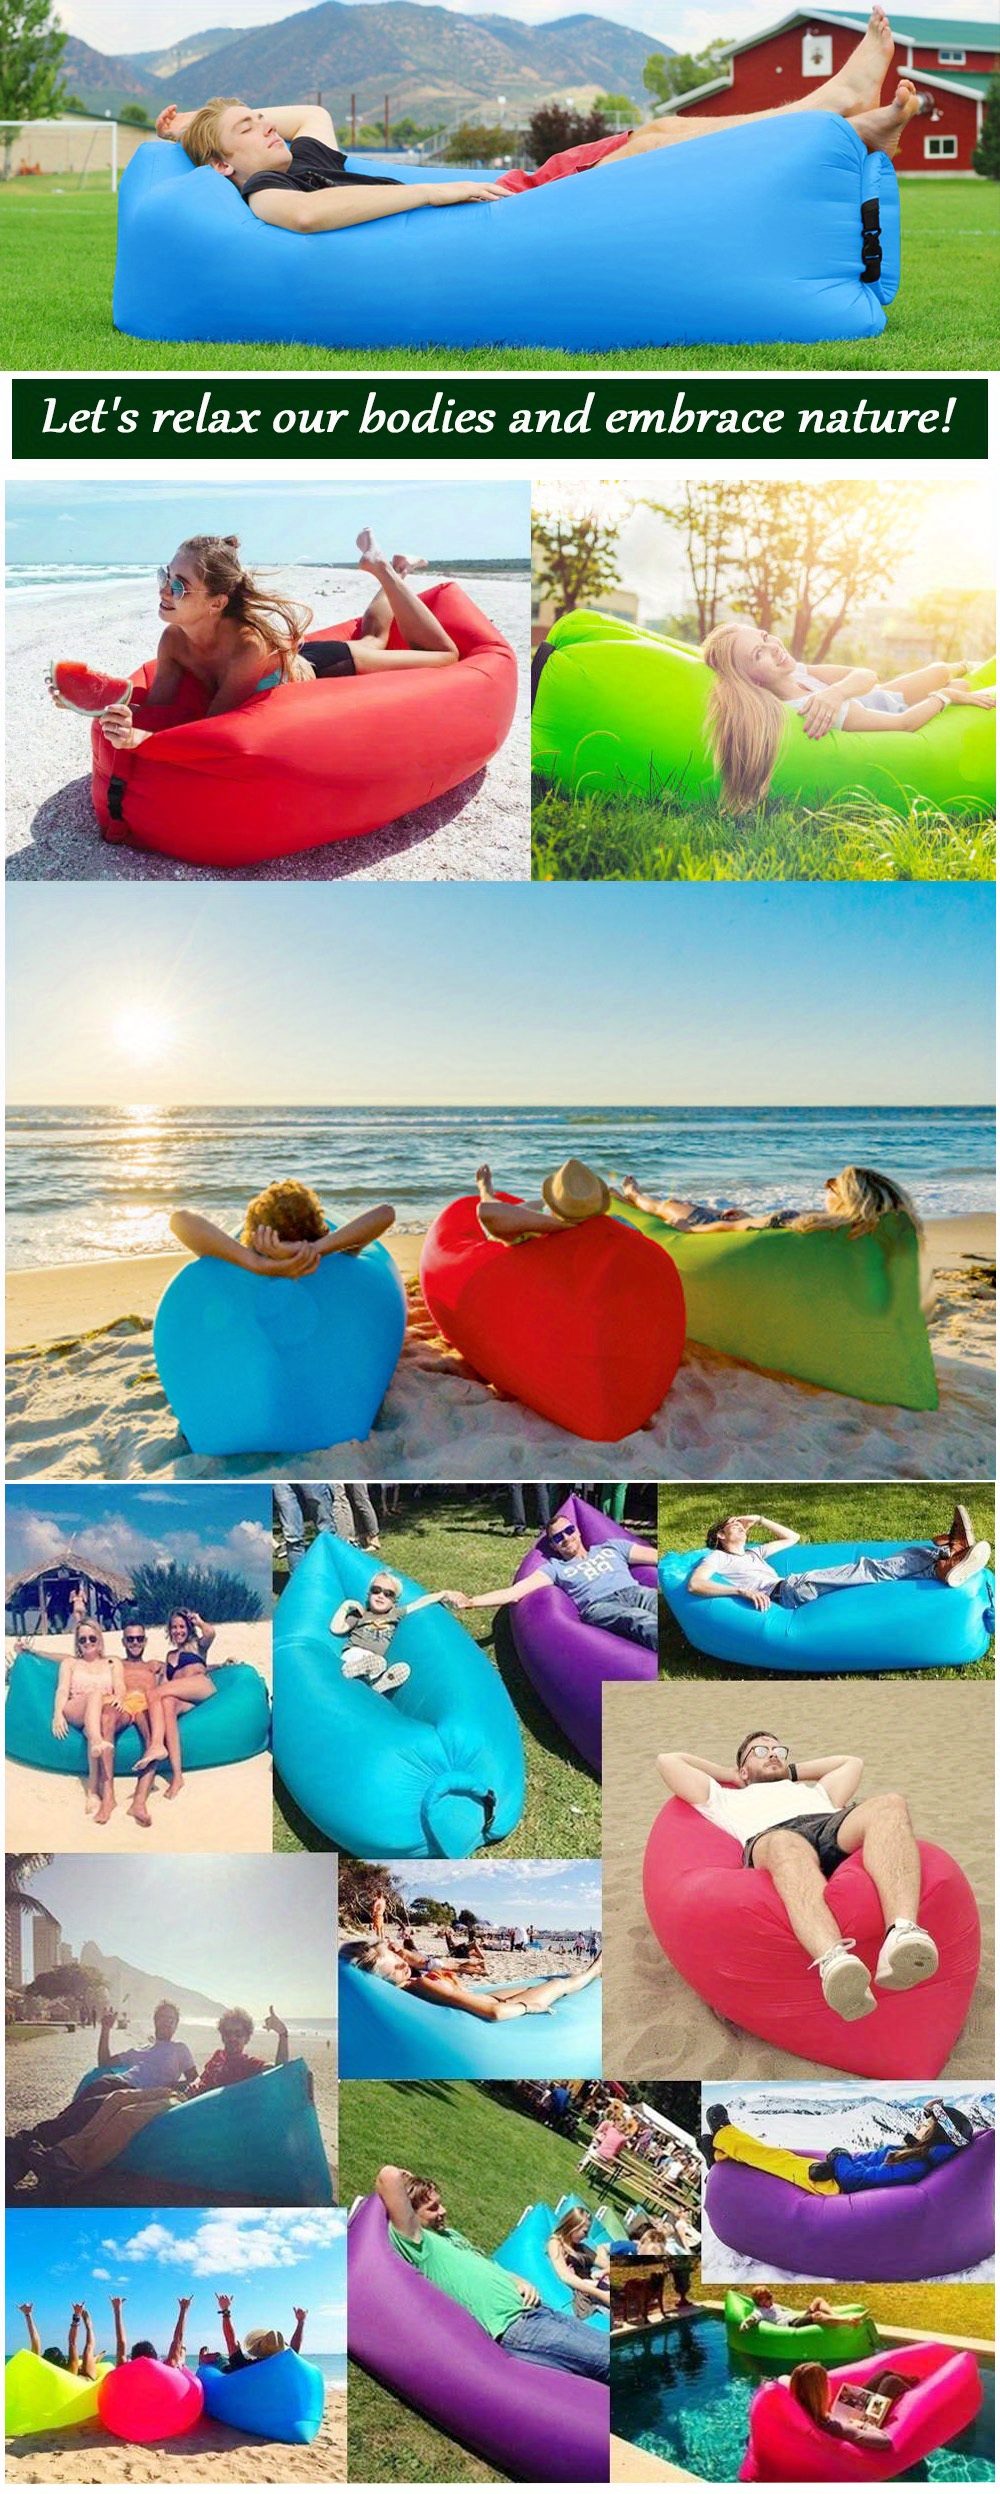 CCDXD - Sofá de aire, tumbona inflable para viajes, al aire libre, camping,  senderismo, fiestas en la playa, picnic, patio trasero, junto al lago